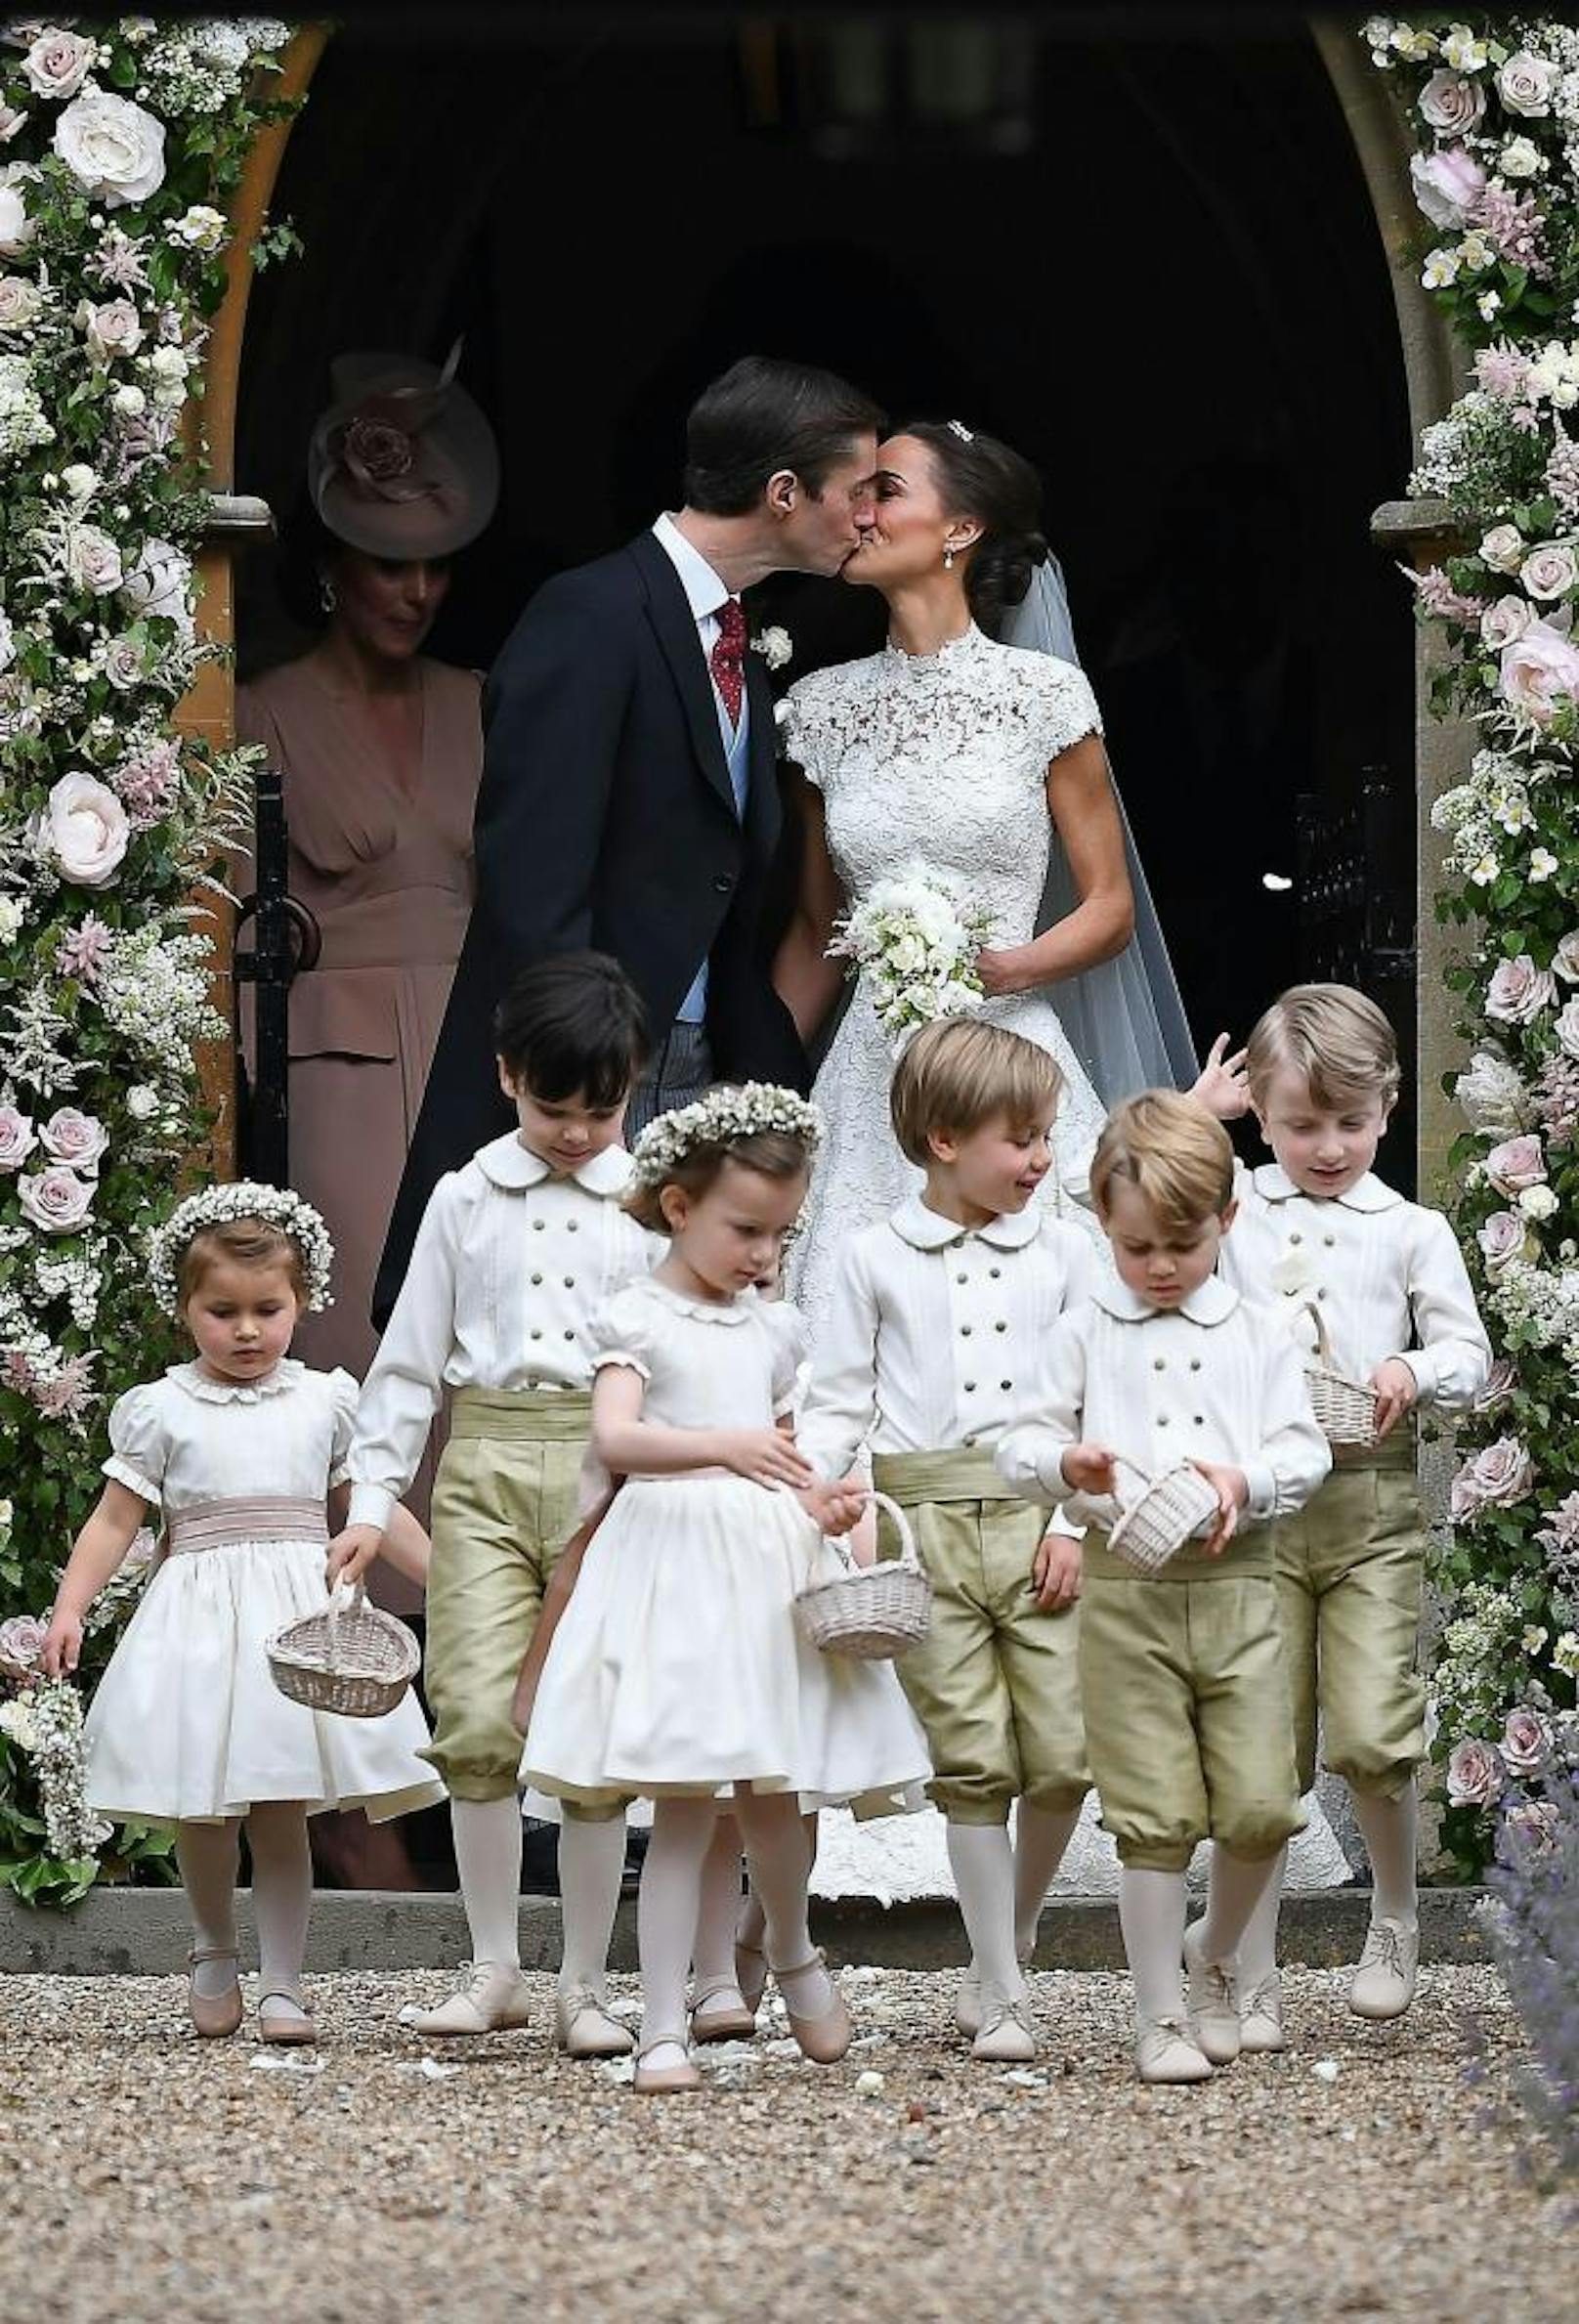 Pippa Middleton küsst ihren Ehemann James Matthews.